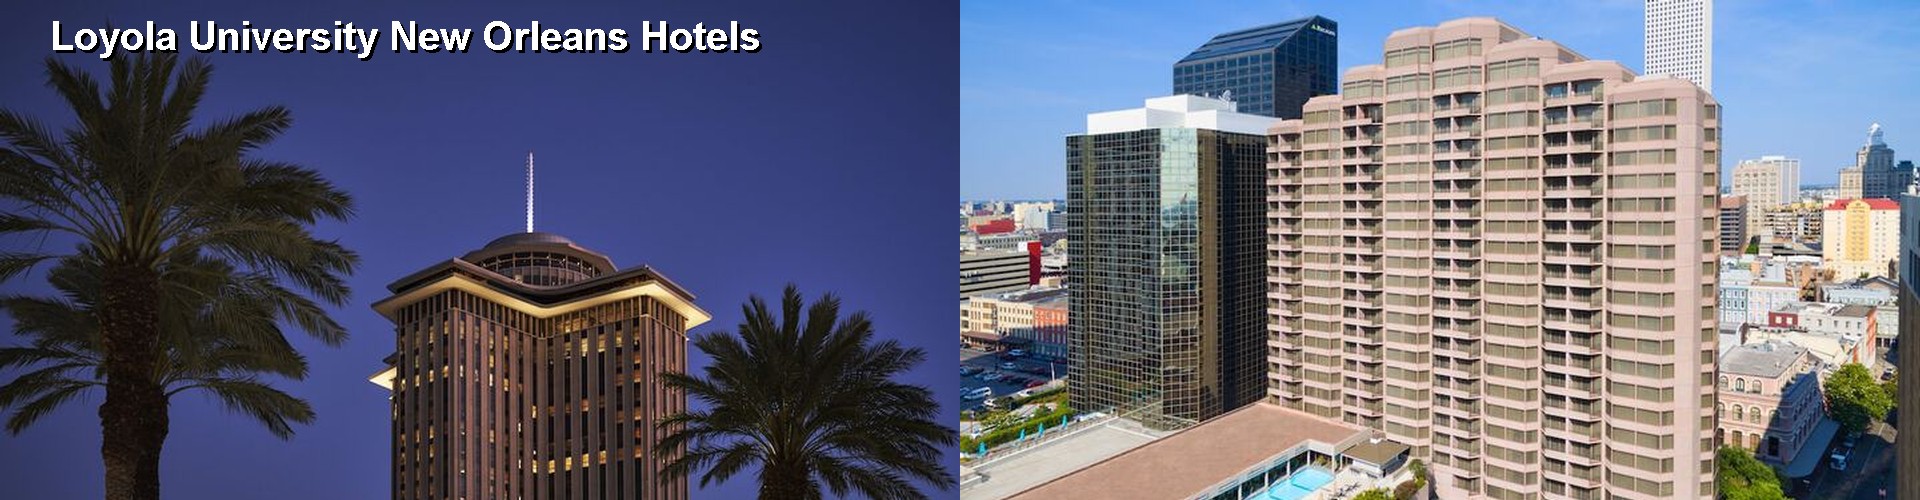 5 Best Hotels near Loyola University New Orleans